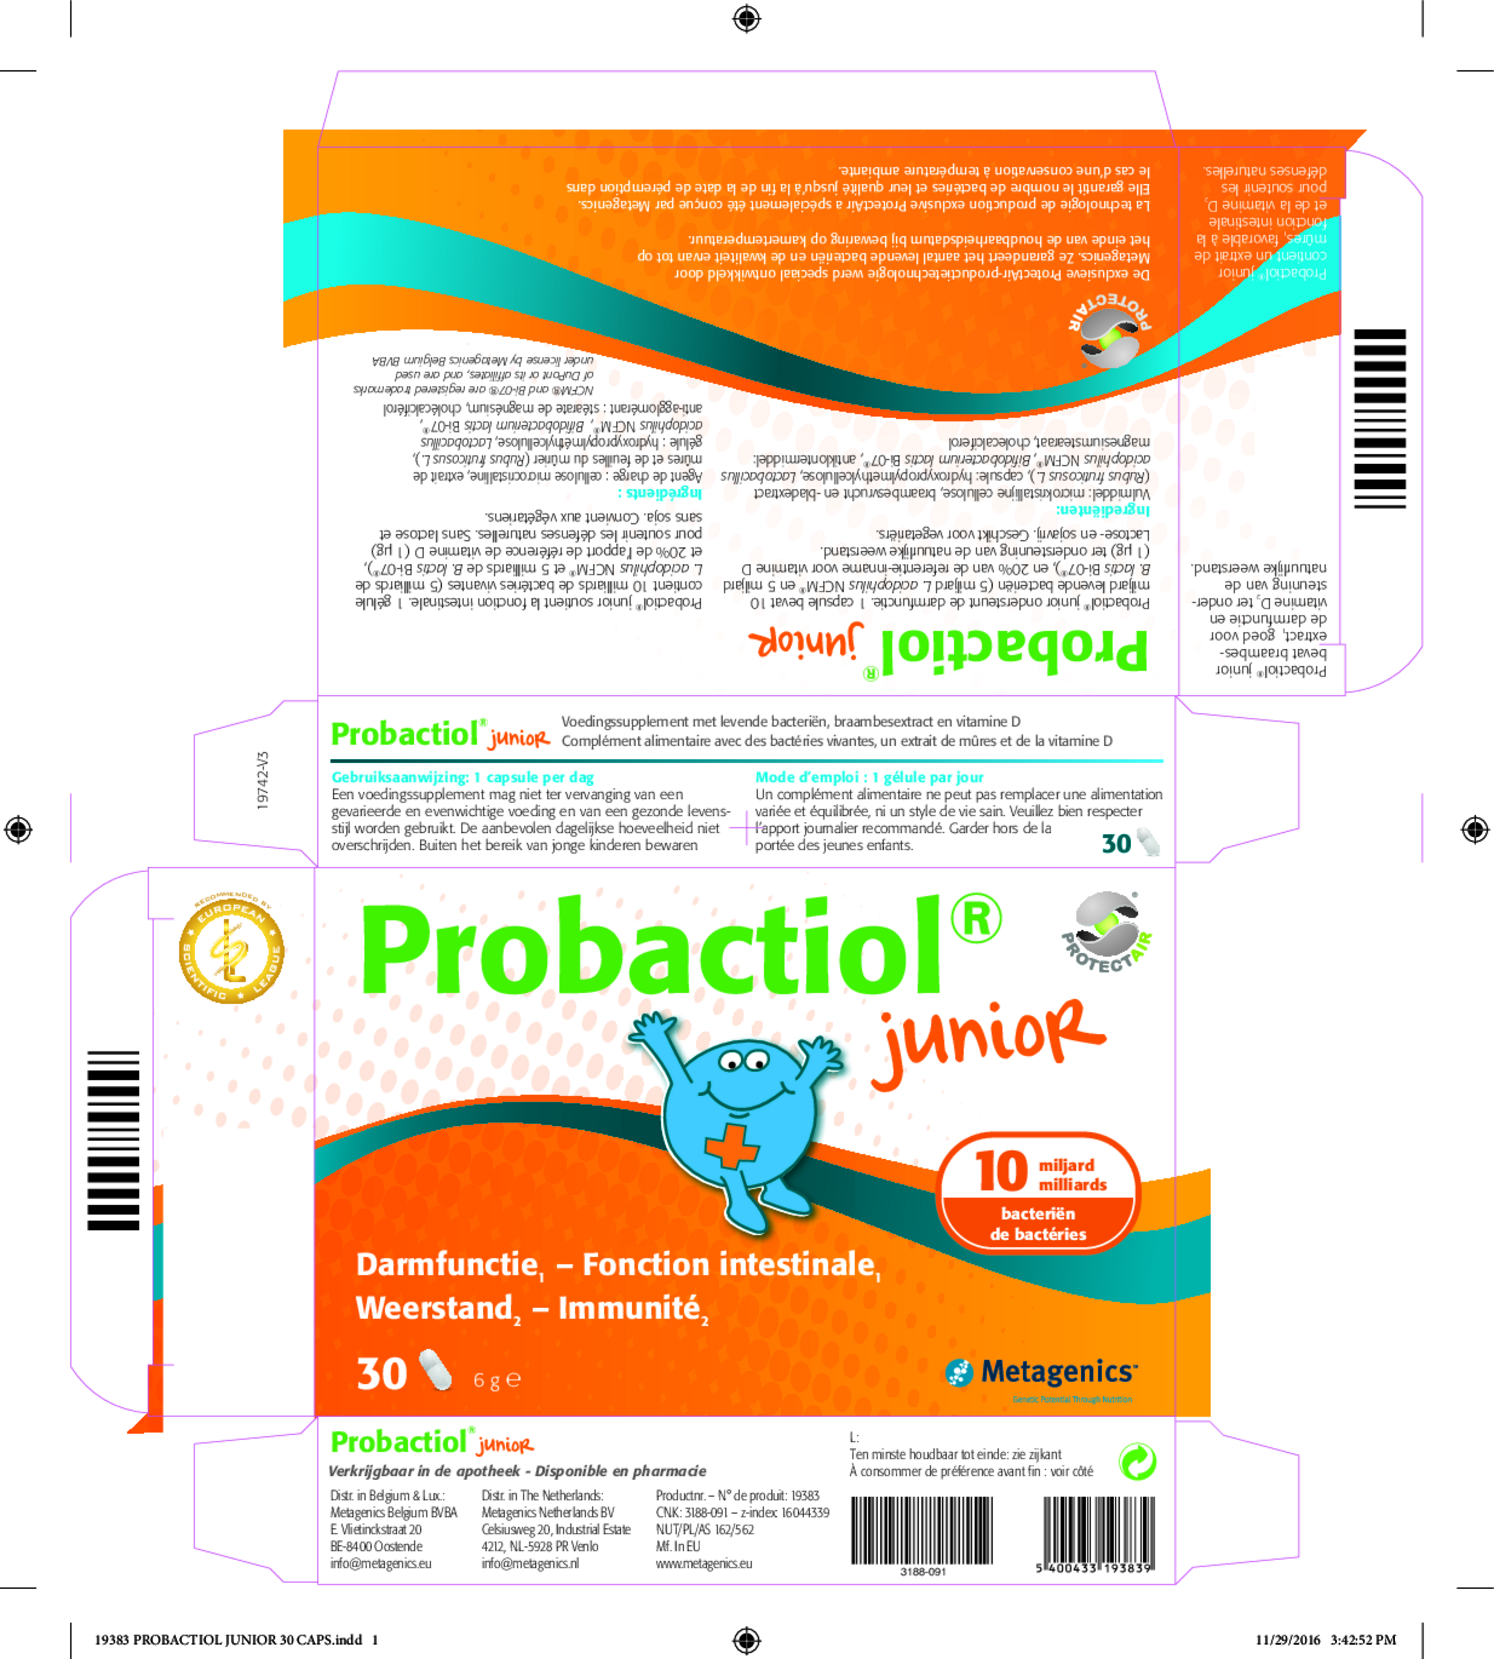 Probactiol Junior Capsules afbeelding van document #1, etiket